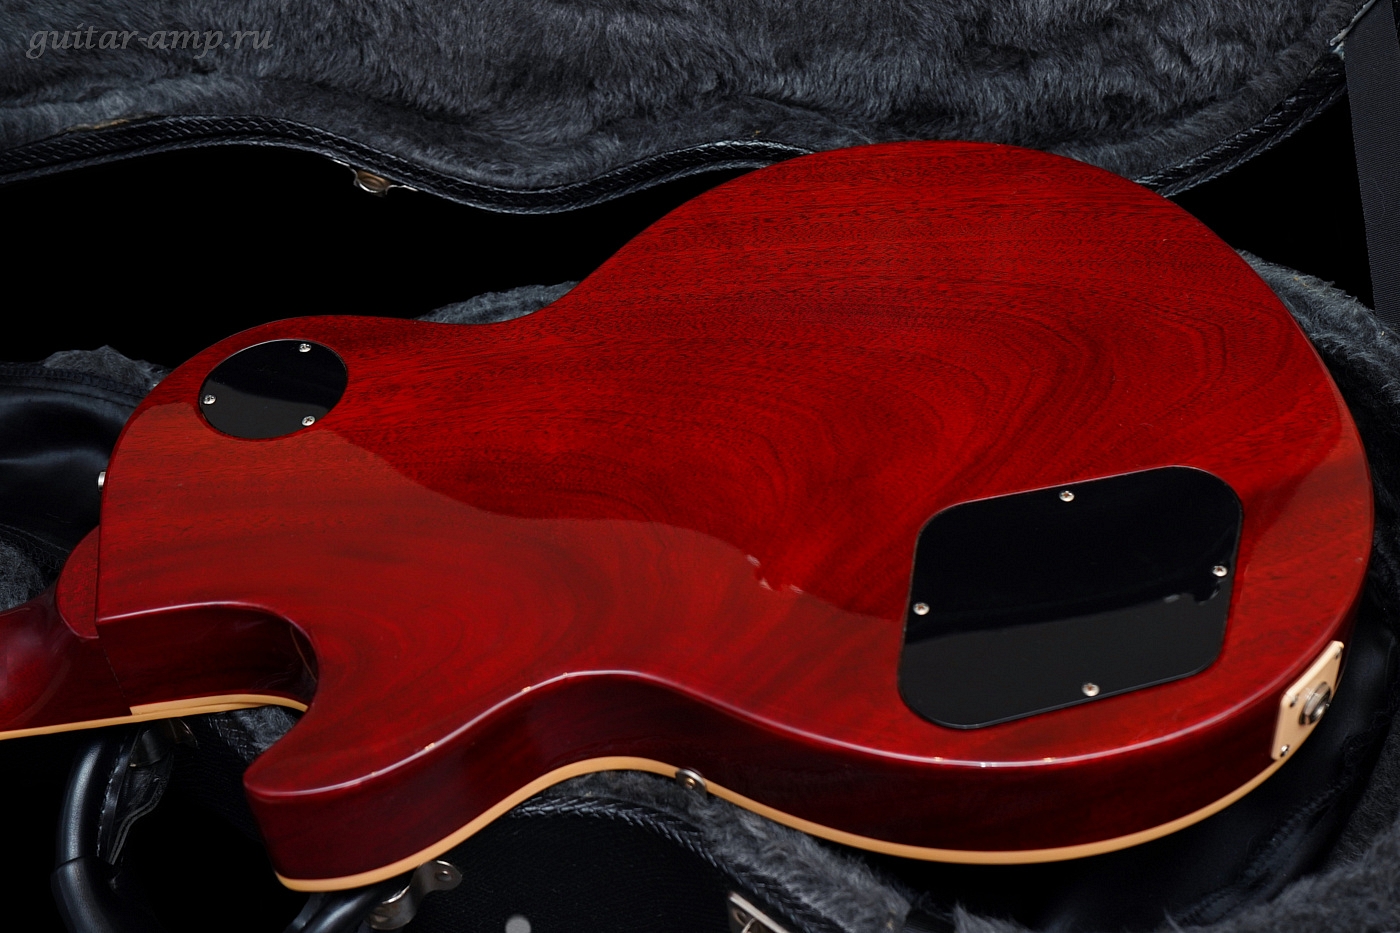 Gibson Les Paul Standard Premium Plus Heritage Cherry Sunburst All Original 2005